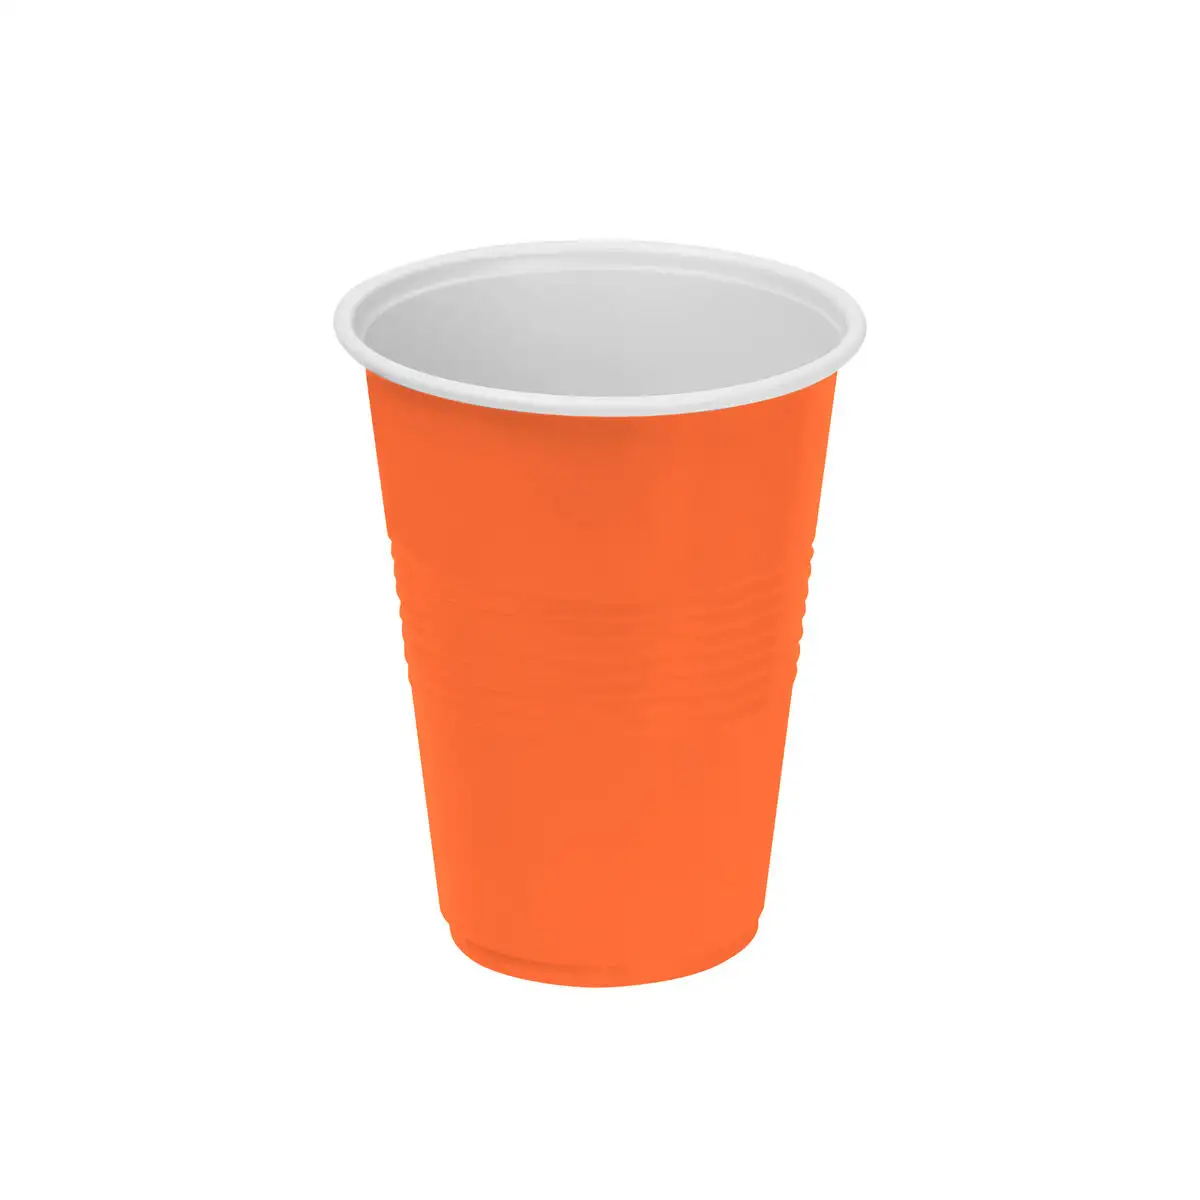 Lot de verres reutilisables algon orange 25 unites 250 ml_2569. DIAYTAR SENEGAL - Là où Chaque Produit Évoque une Émotion. Parcourez notre catalogue et choisissez des articles qui vous touchent et qui enrichissent votre expérience.